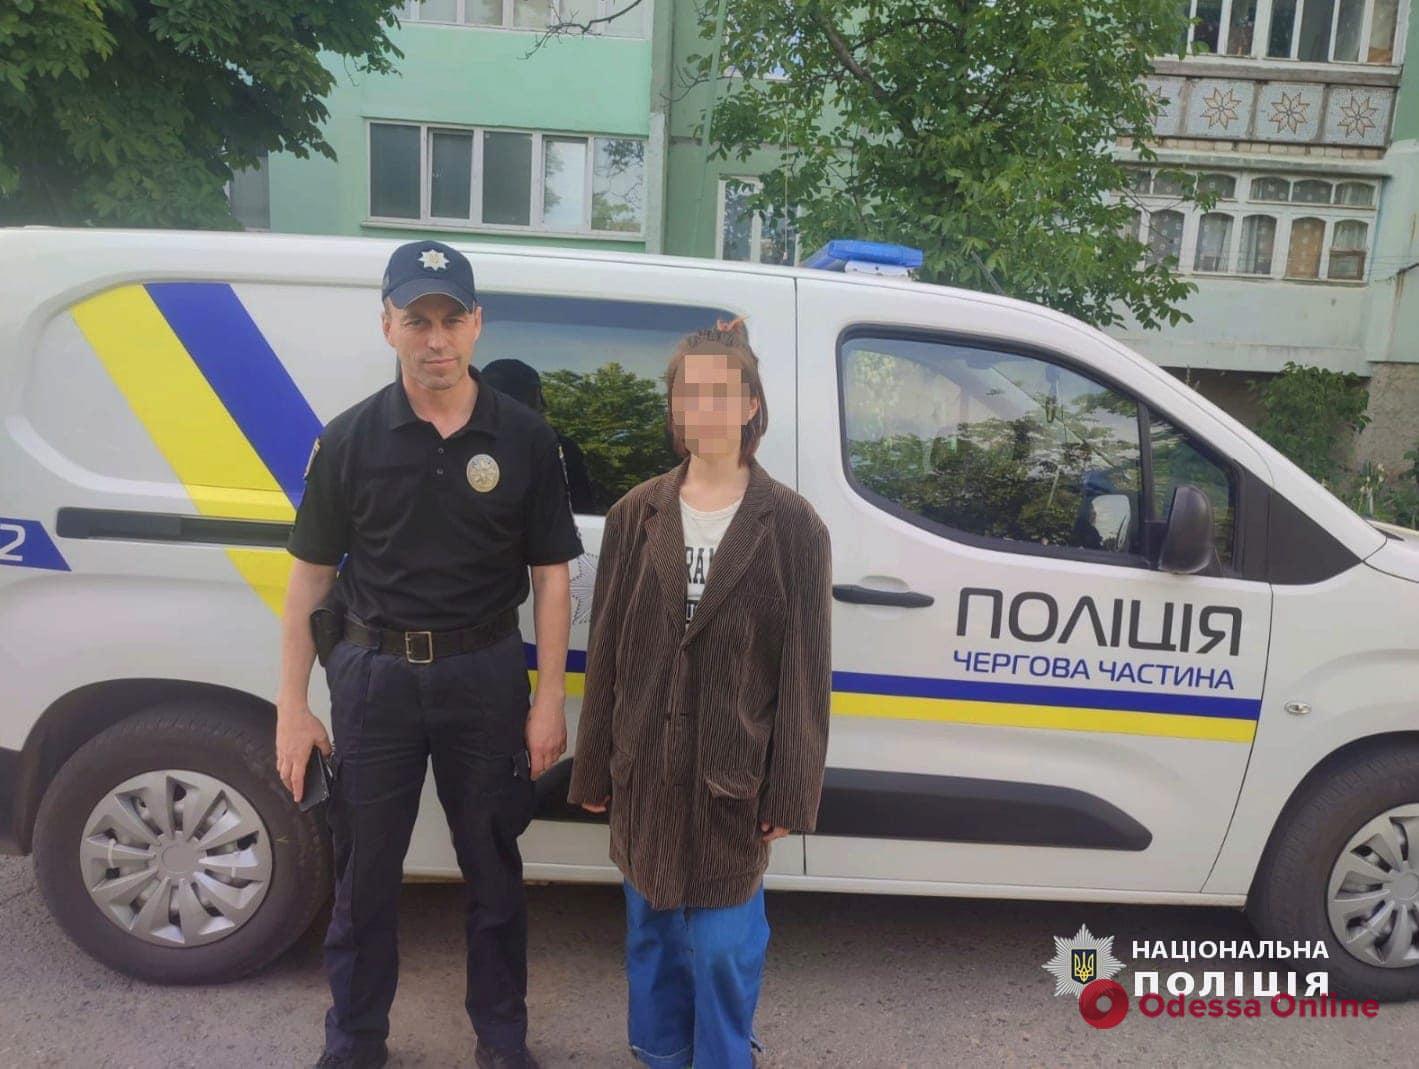 Одесские правоохранители разыскали 15-летнюю девушку, которая сбежала из дома после ссоры с матерью